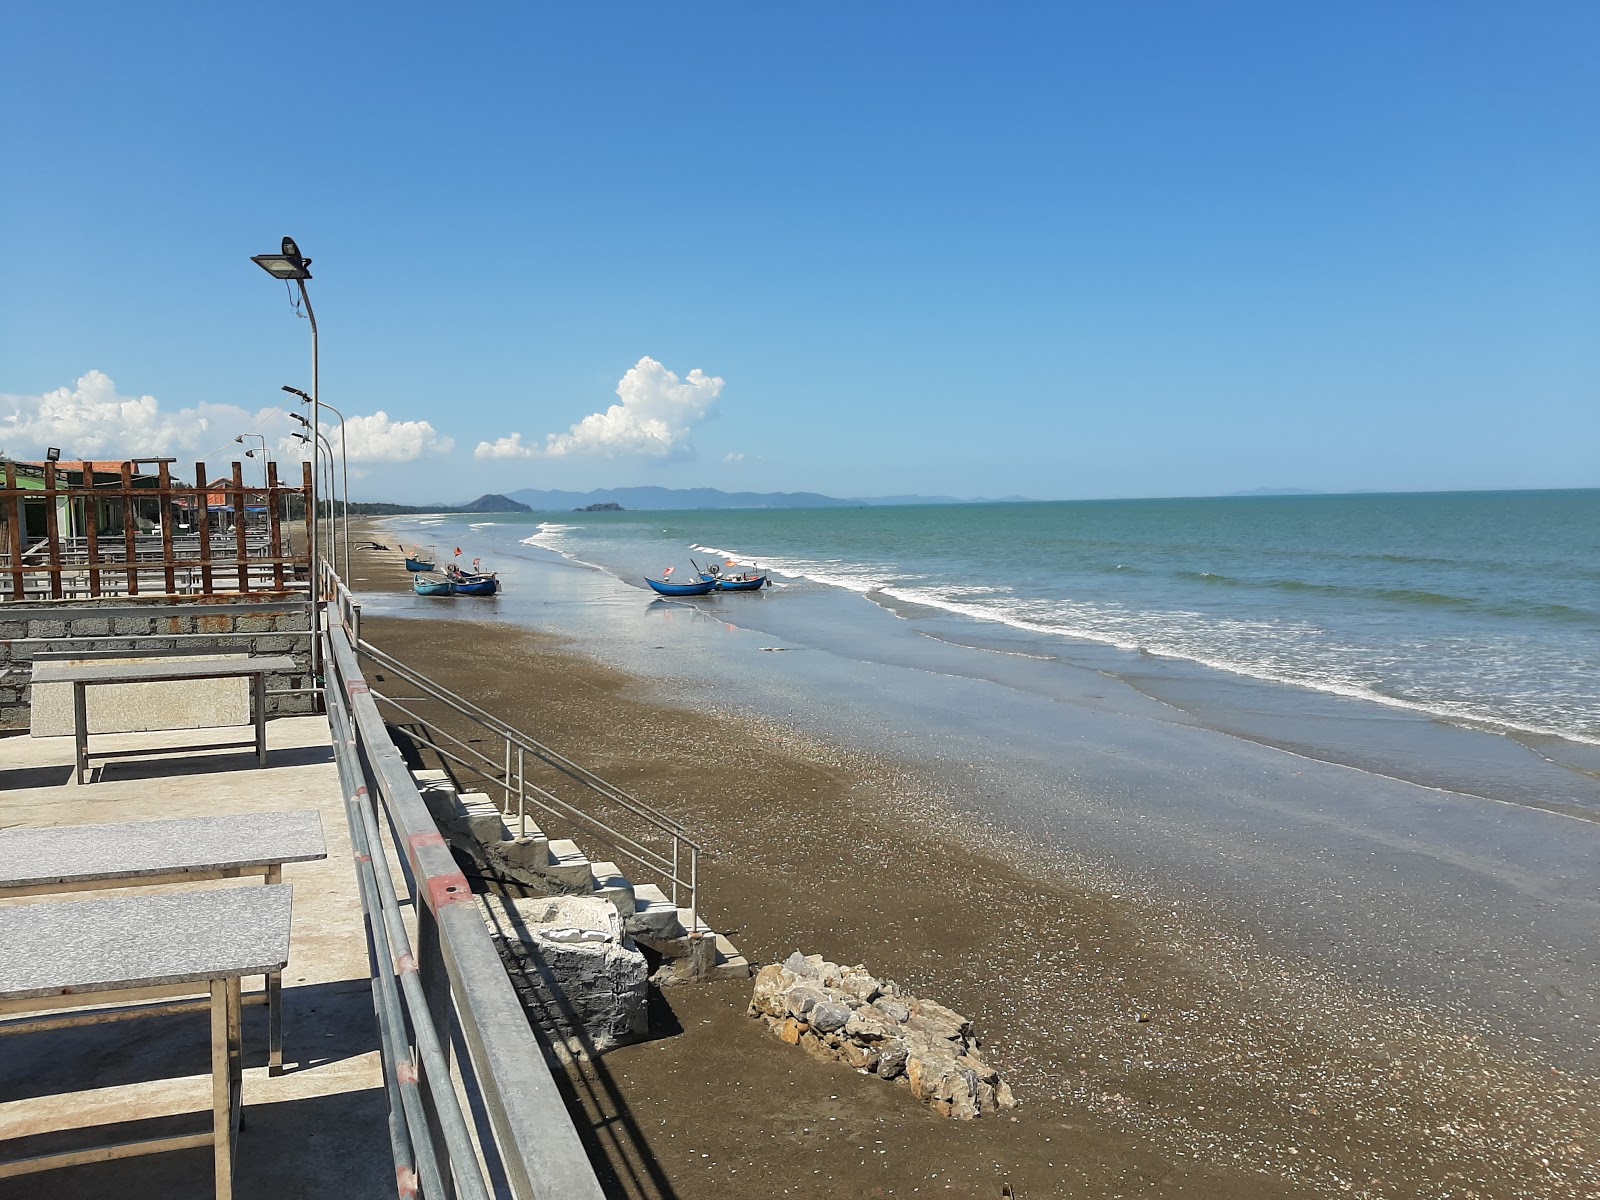 Zdjęcie Quynh Nghia Beach z powierzchnią jasny piasek